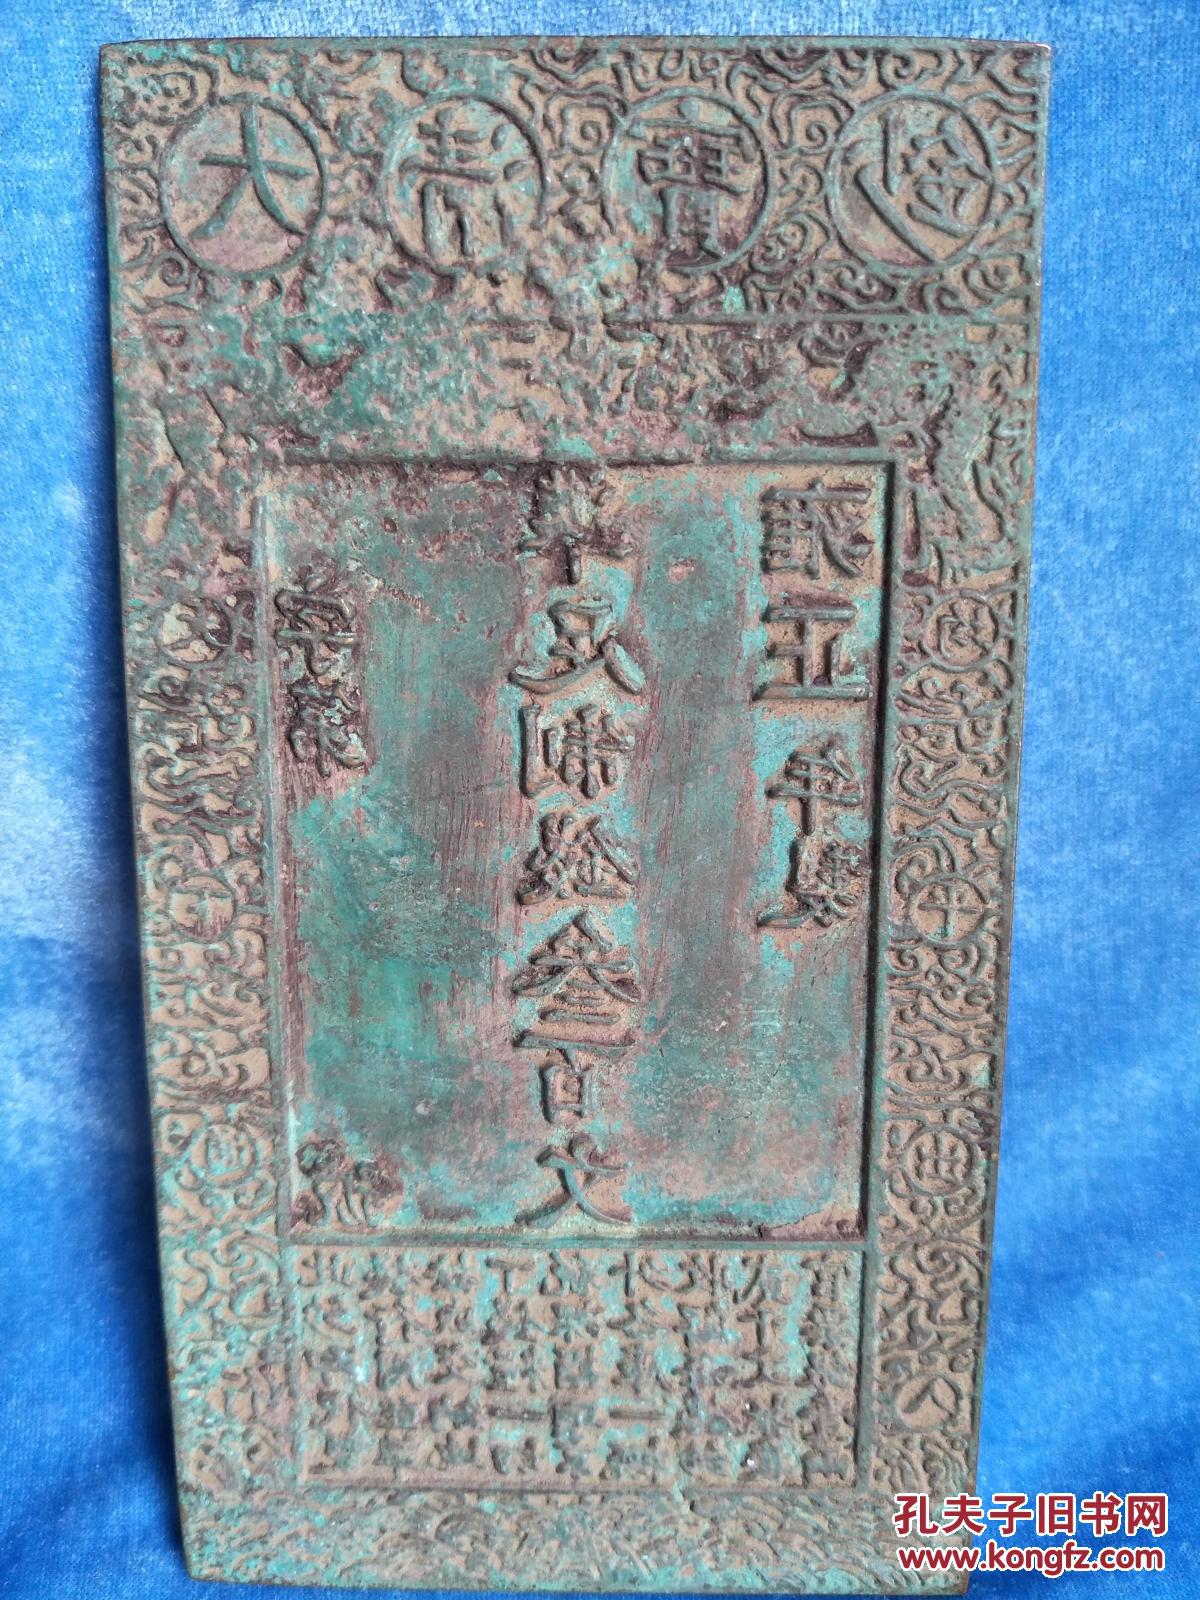 清代官府印钞,铜模板,具有收藏研究价值,重约2斤 拍品编号:28659623